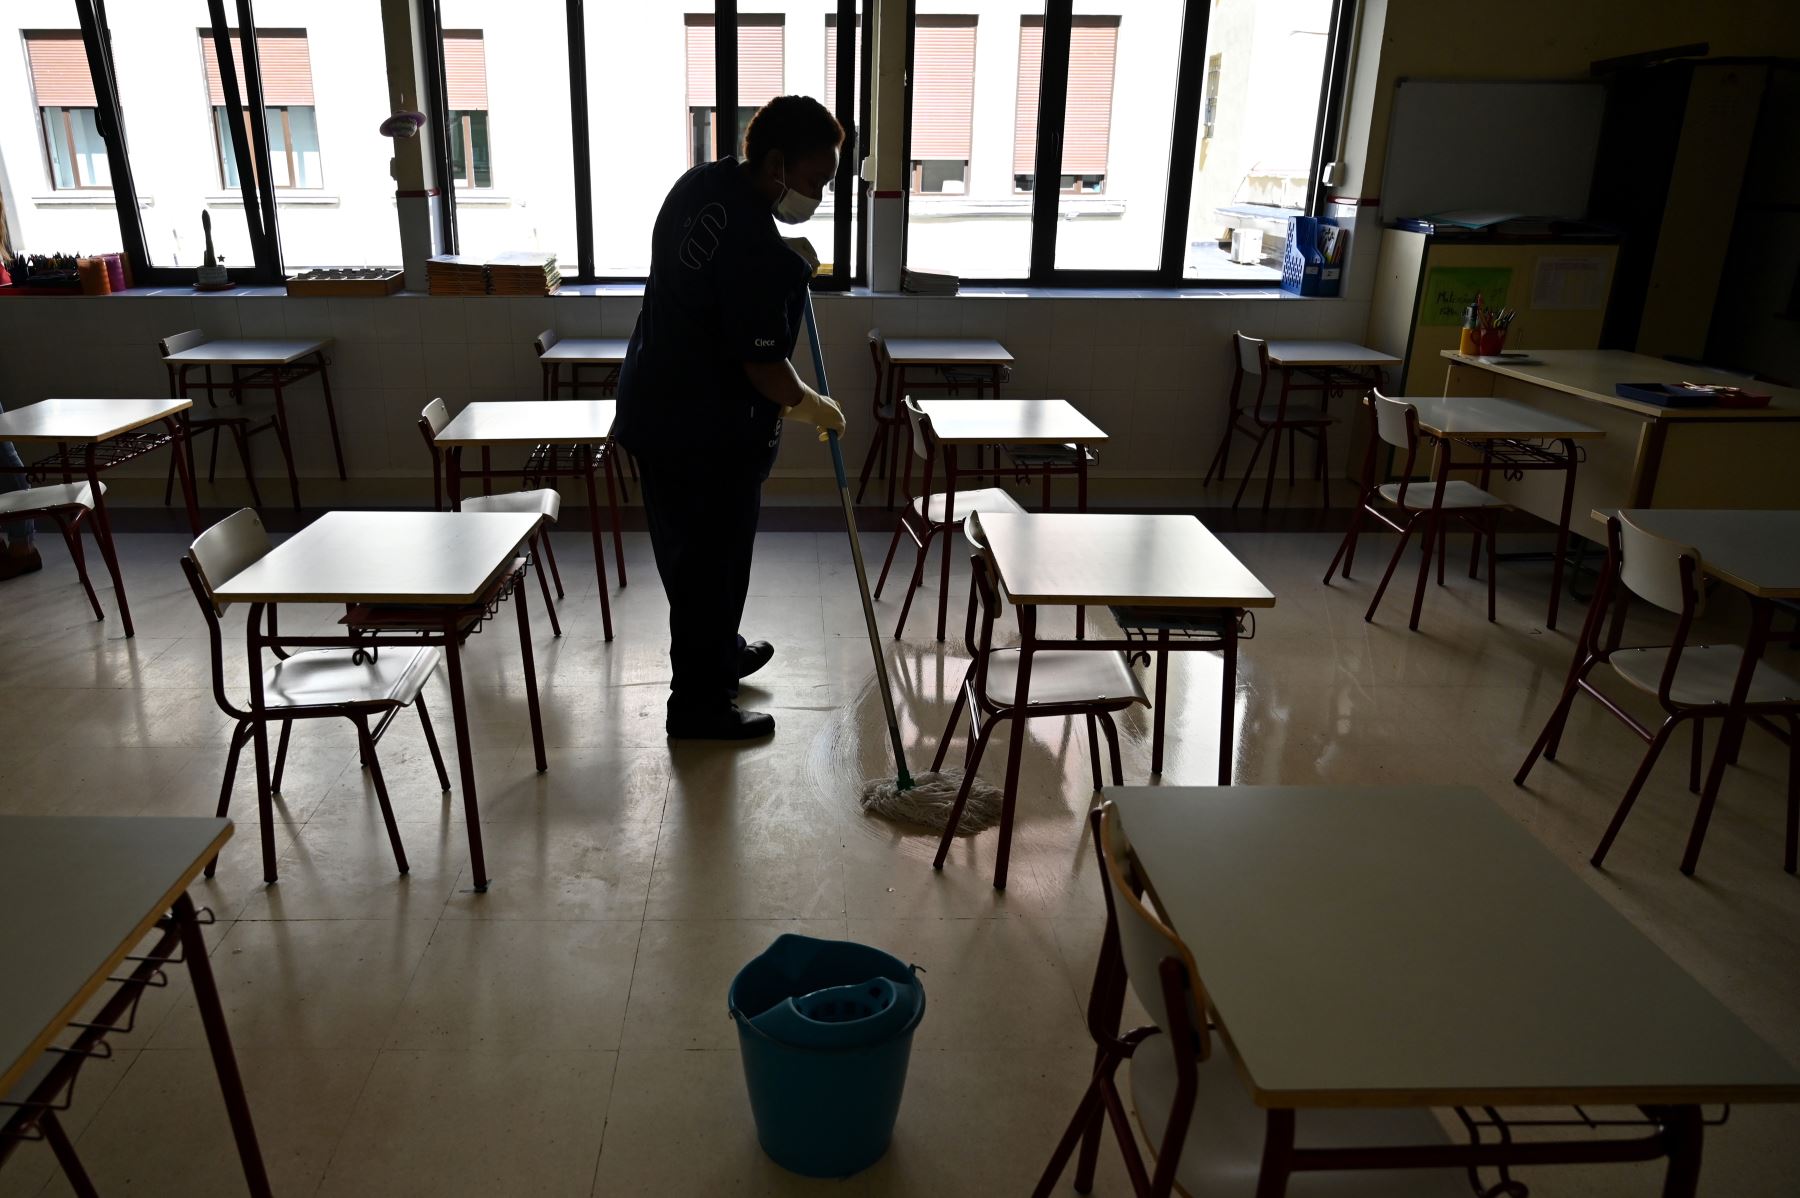 Un miembro del personal de limpieza desinfecta las aulas de un centro de estudios en Madrid. Escuelas han cerrado debido al rebrote del coronavirus. Foto: AFP